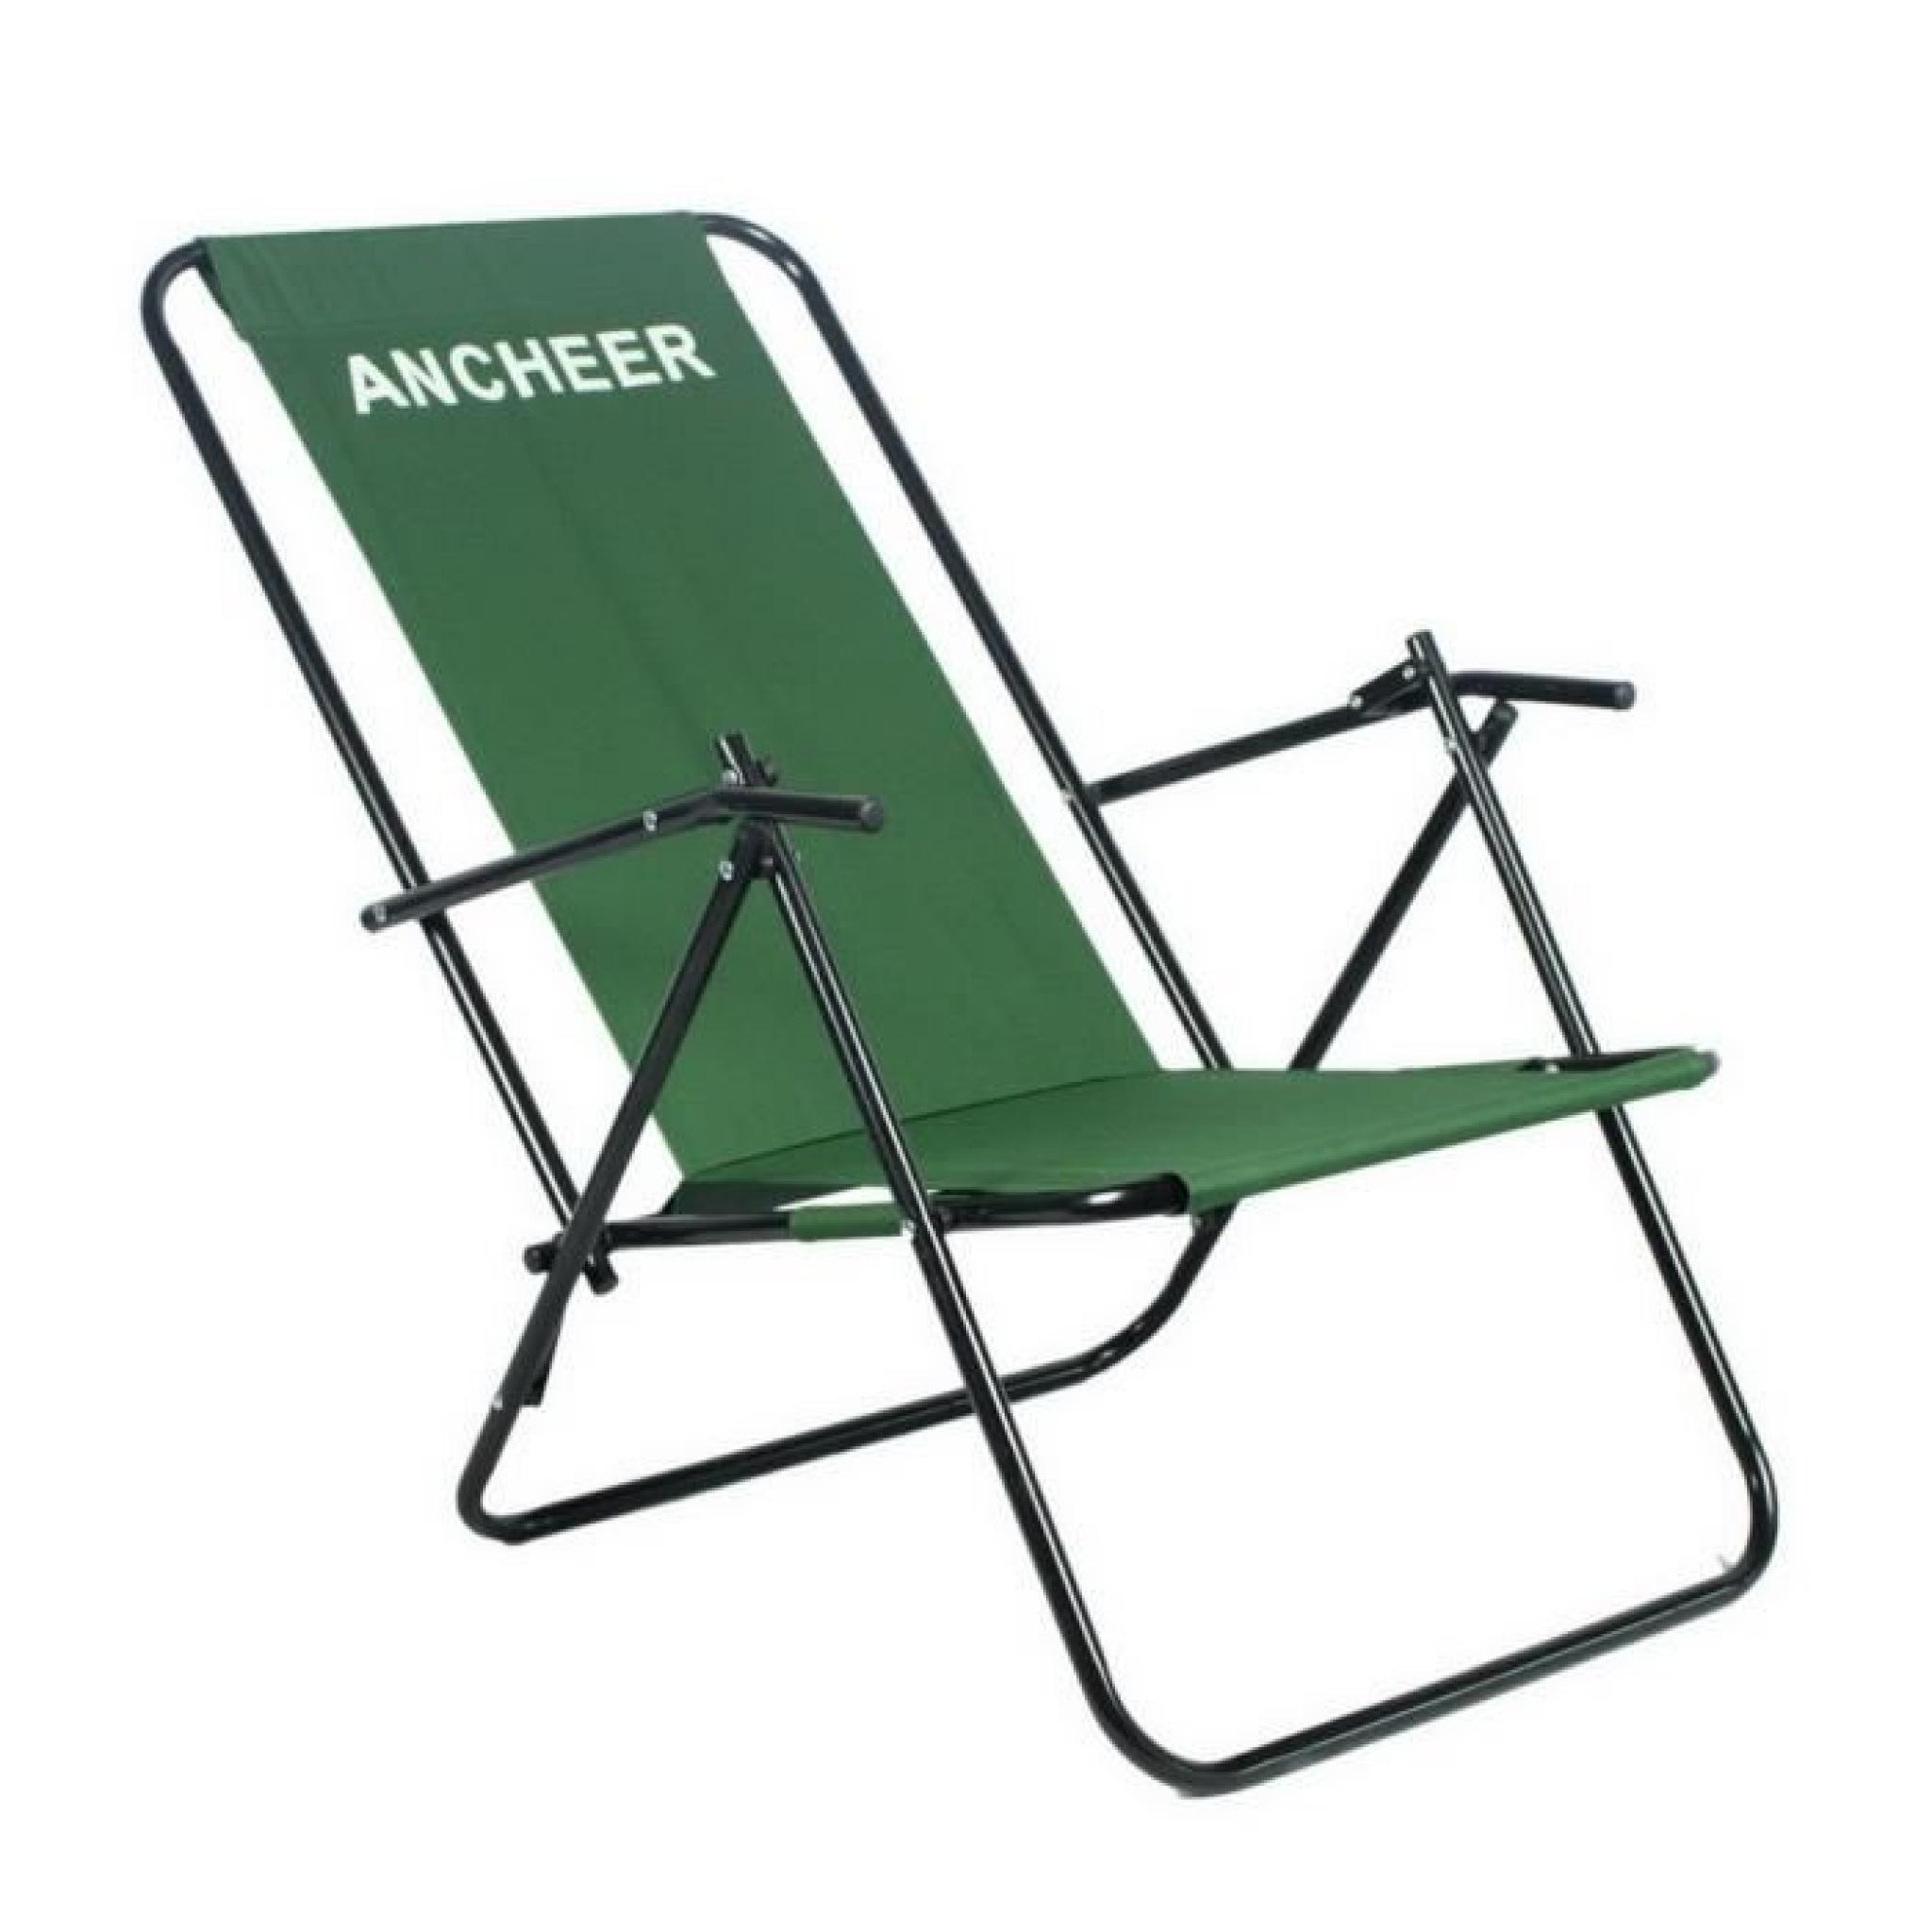 ANCHEER Portable Outdoor Camping pliante chaise inclinable avec accoudoir